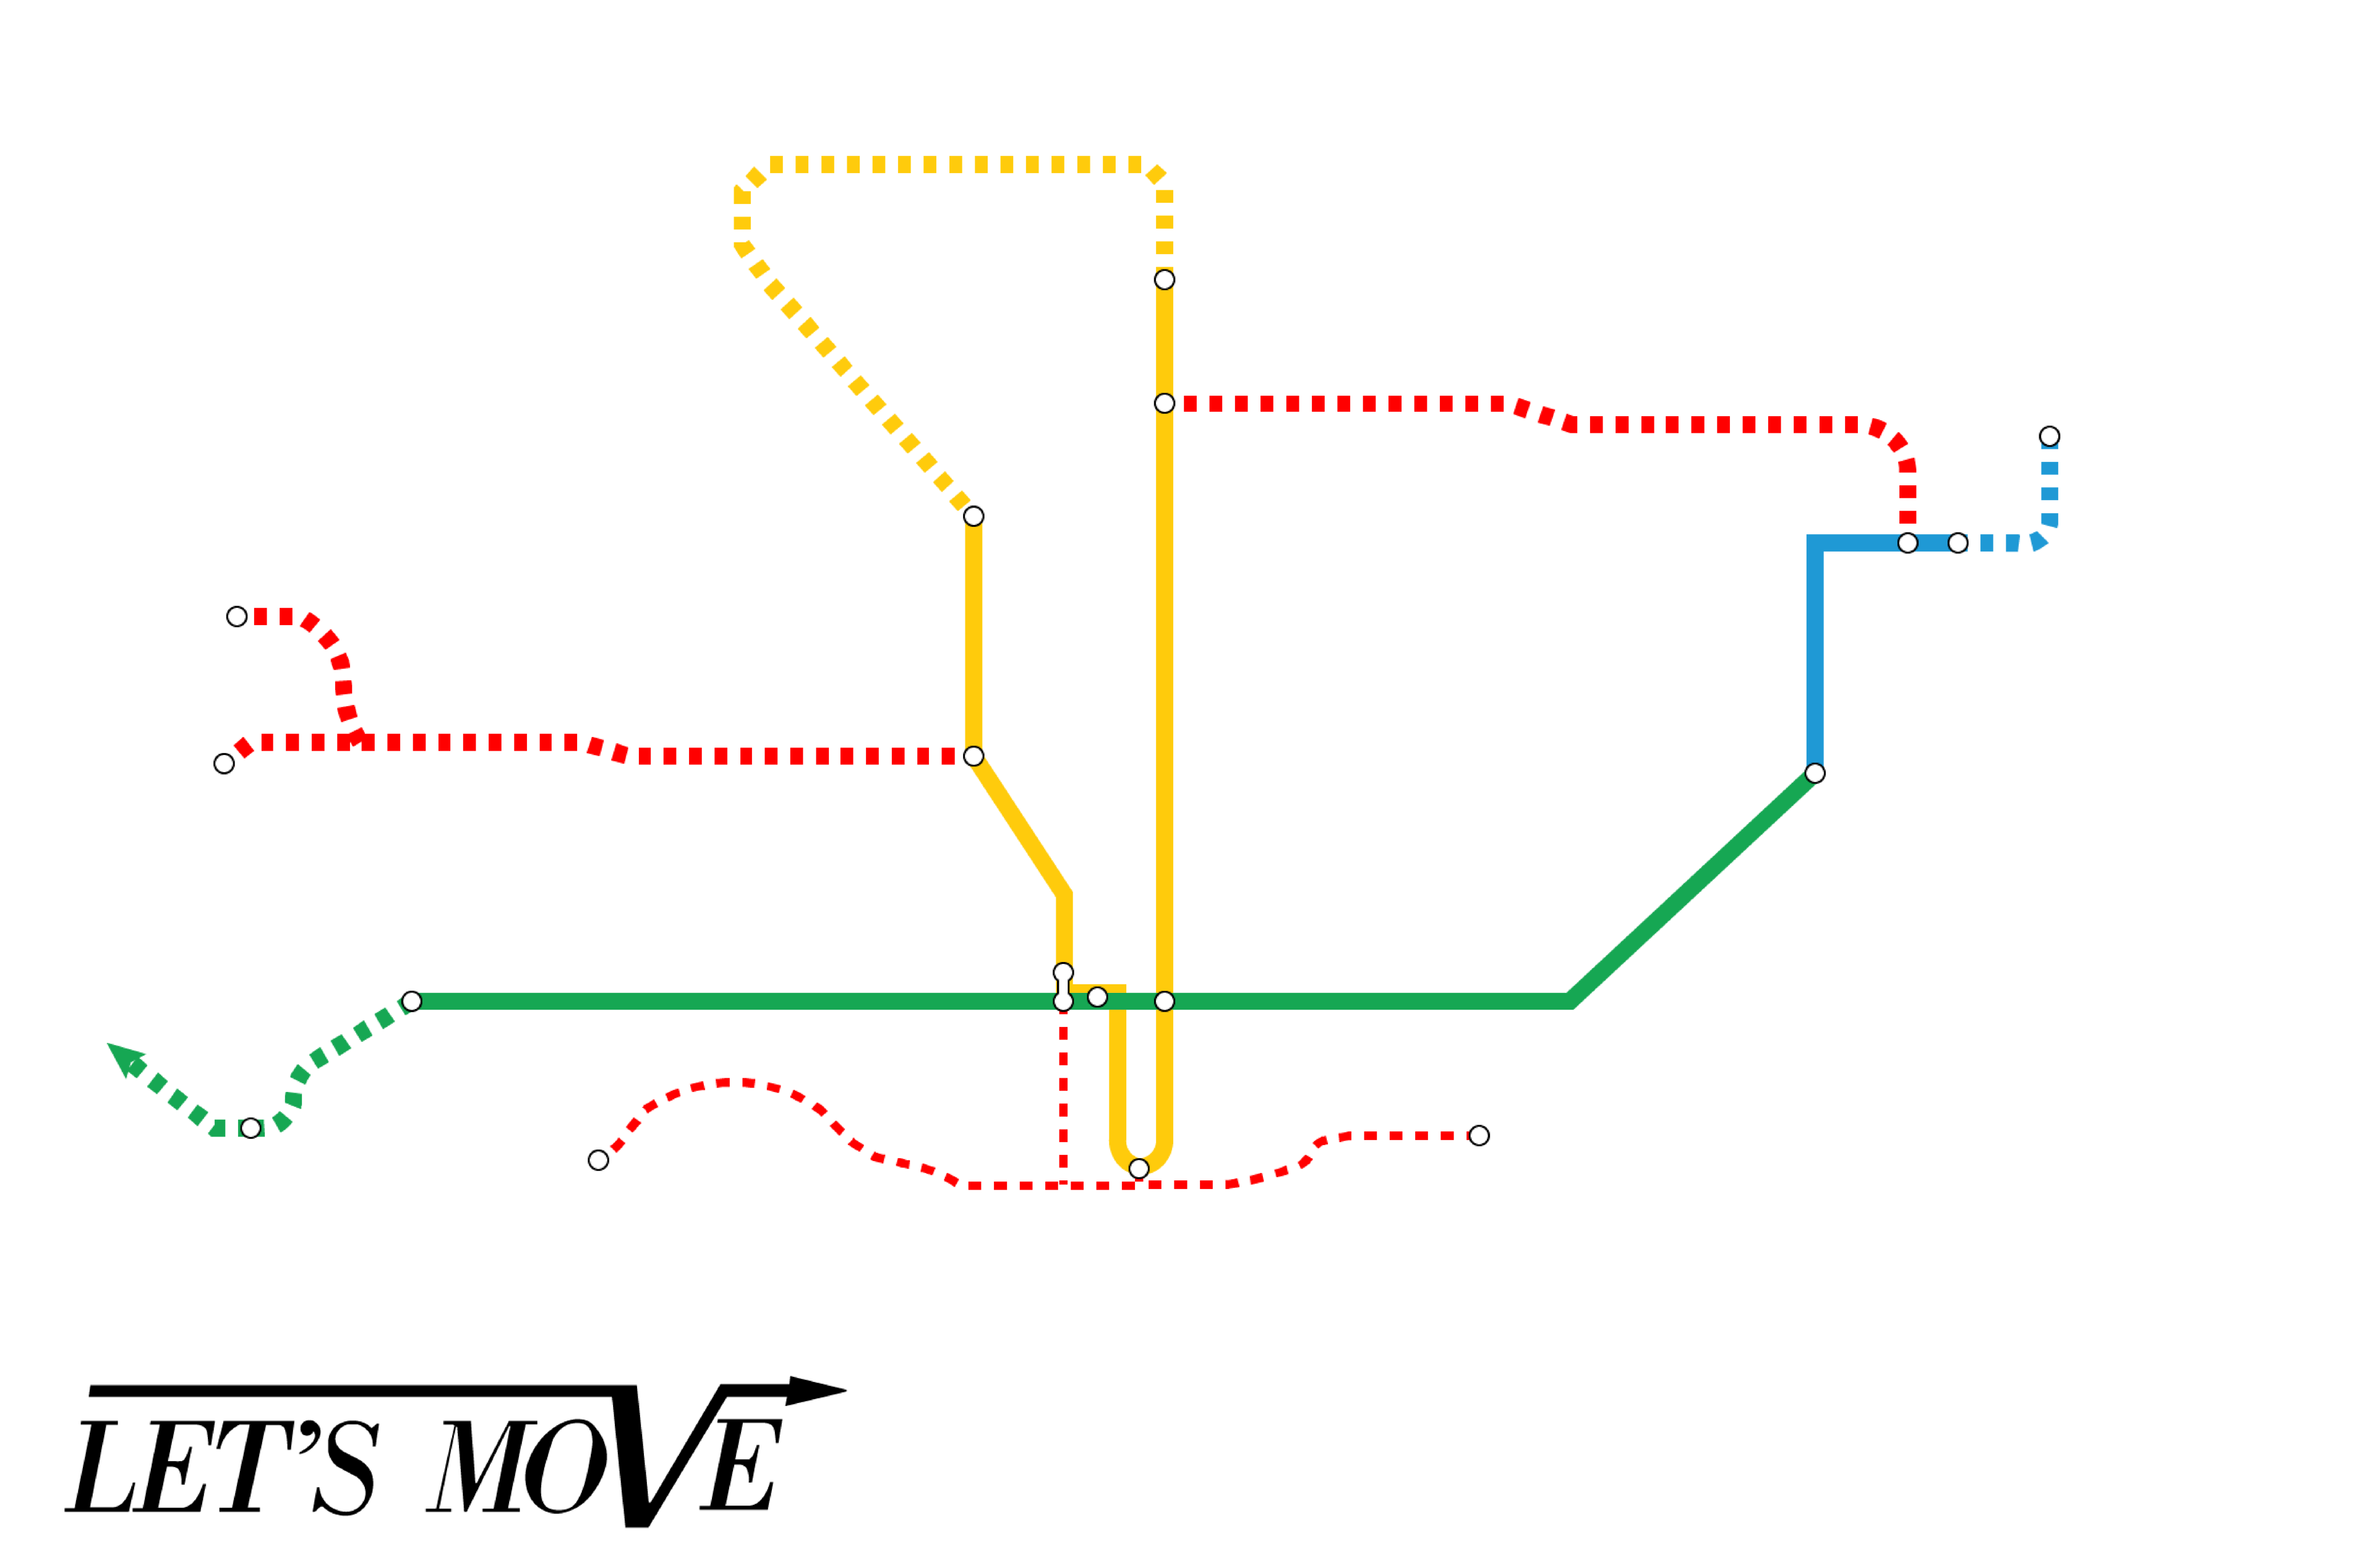 Let's Move/Rapid Transit Expansion Program (1990/1993)